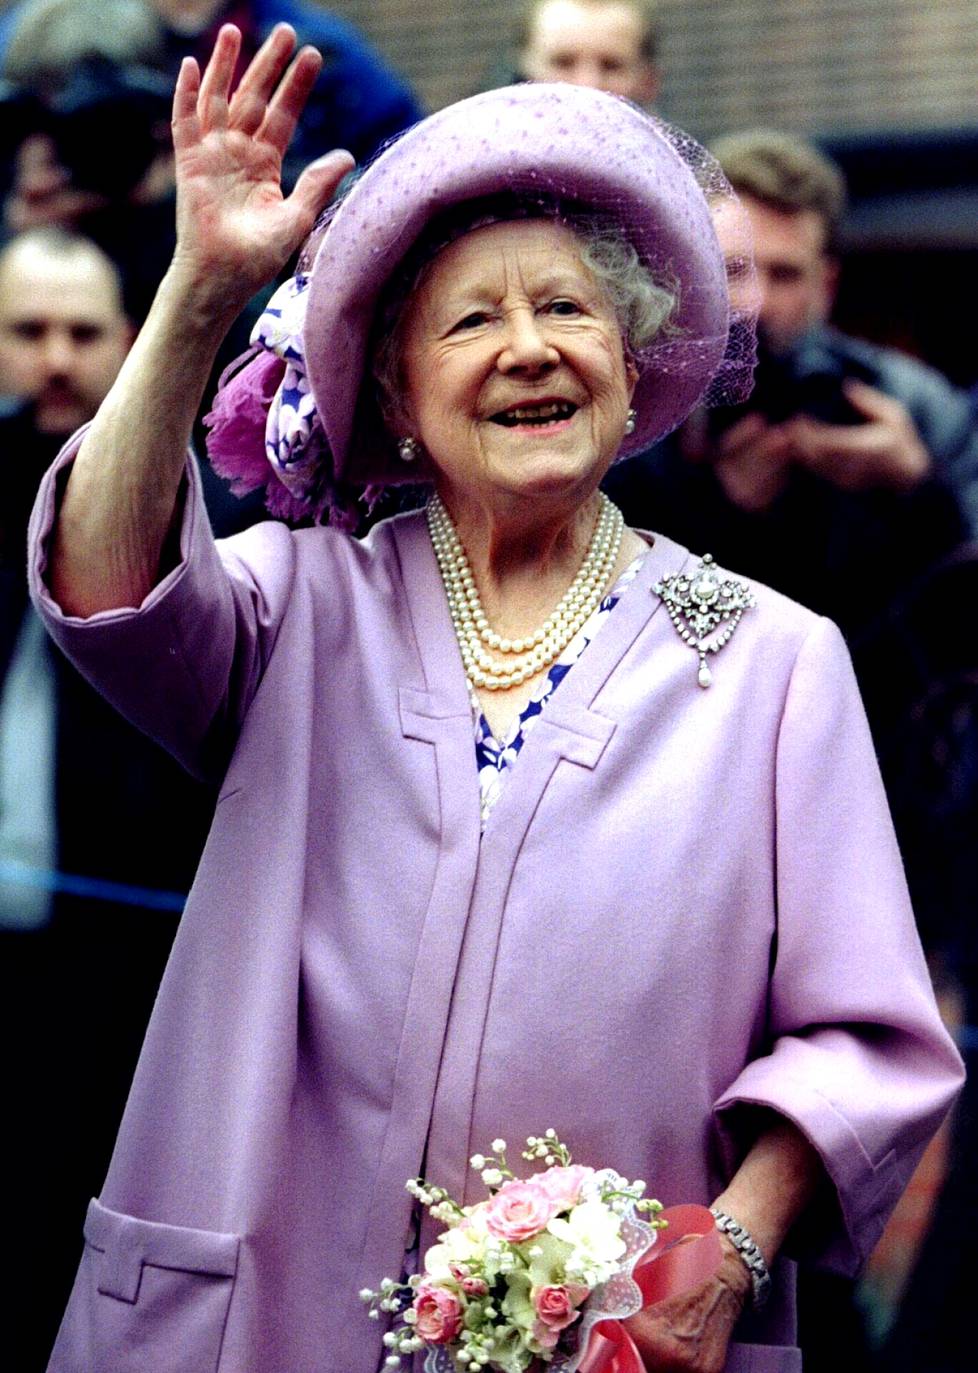 Kuningataräiti Elisabet (1900-2002) tunnettiin aina iloisesta ilmestään. Kuoren alla hän oli tiukka pakkaus, jota Catherine nyt monen hovia tuntevan mukaan muistuttaa.